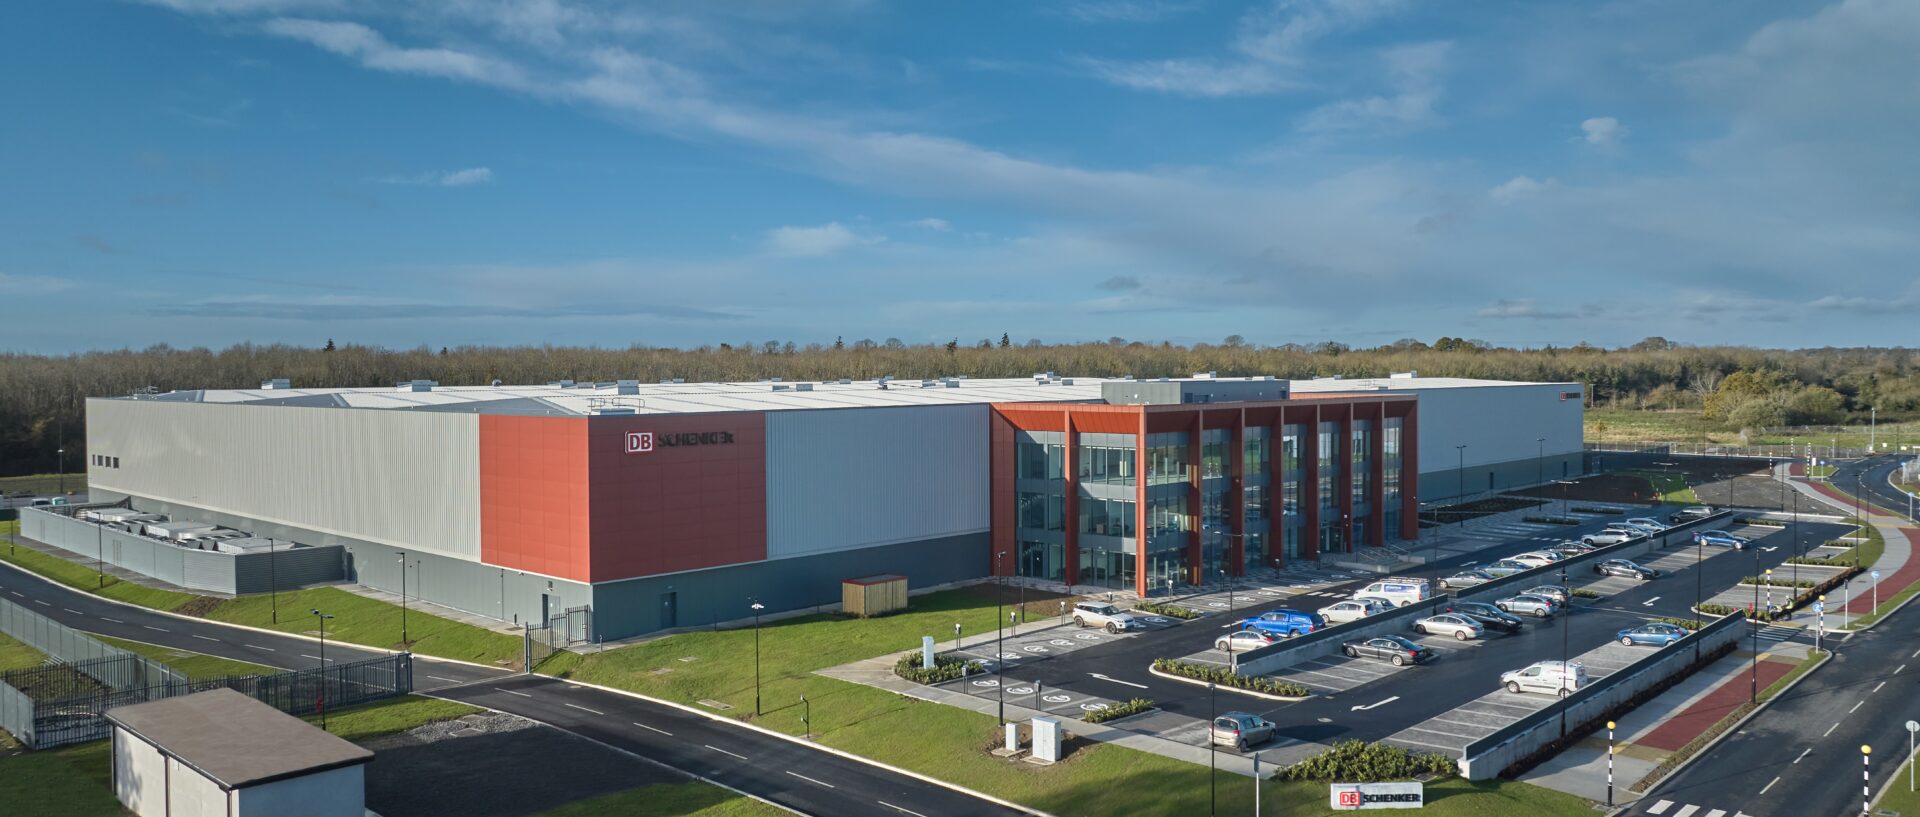 DB SCHENKER facility in Ireland